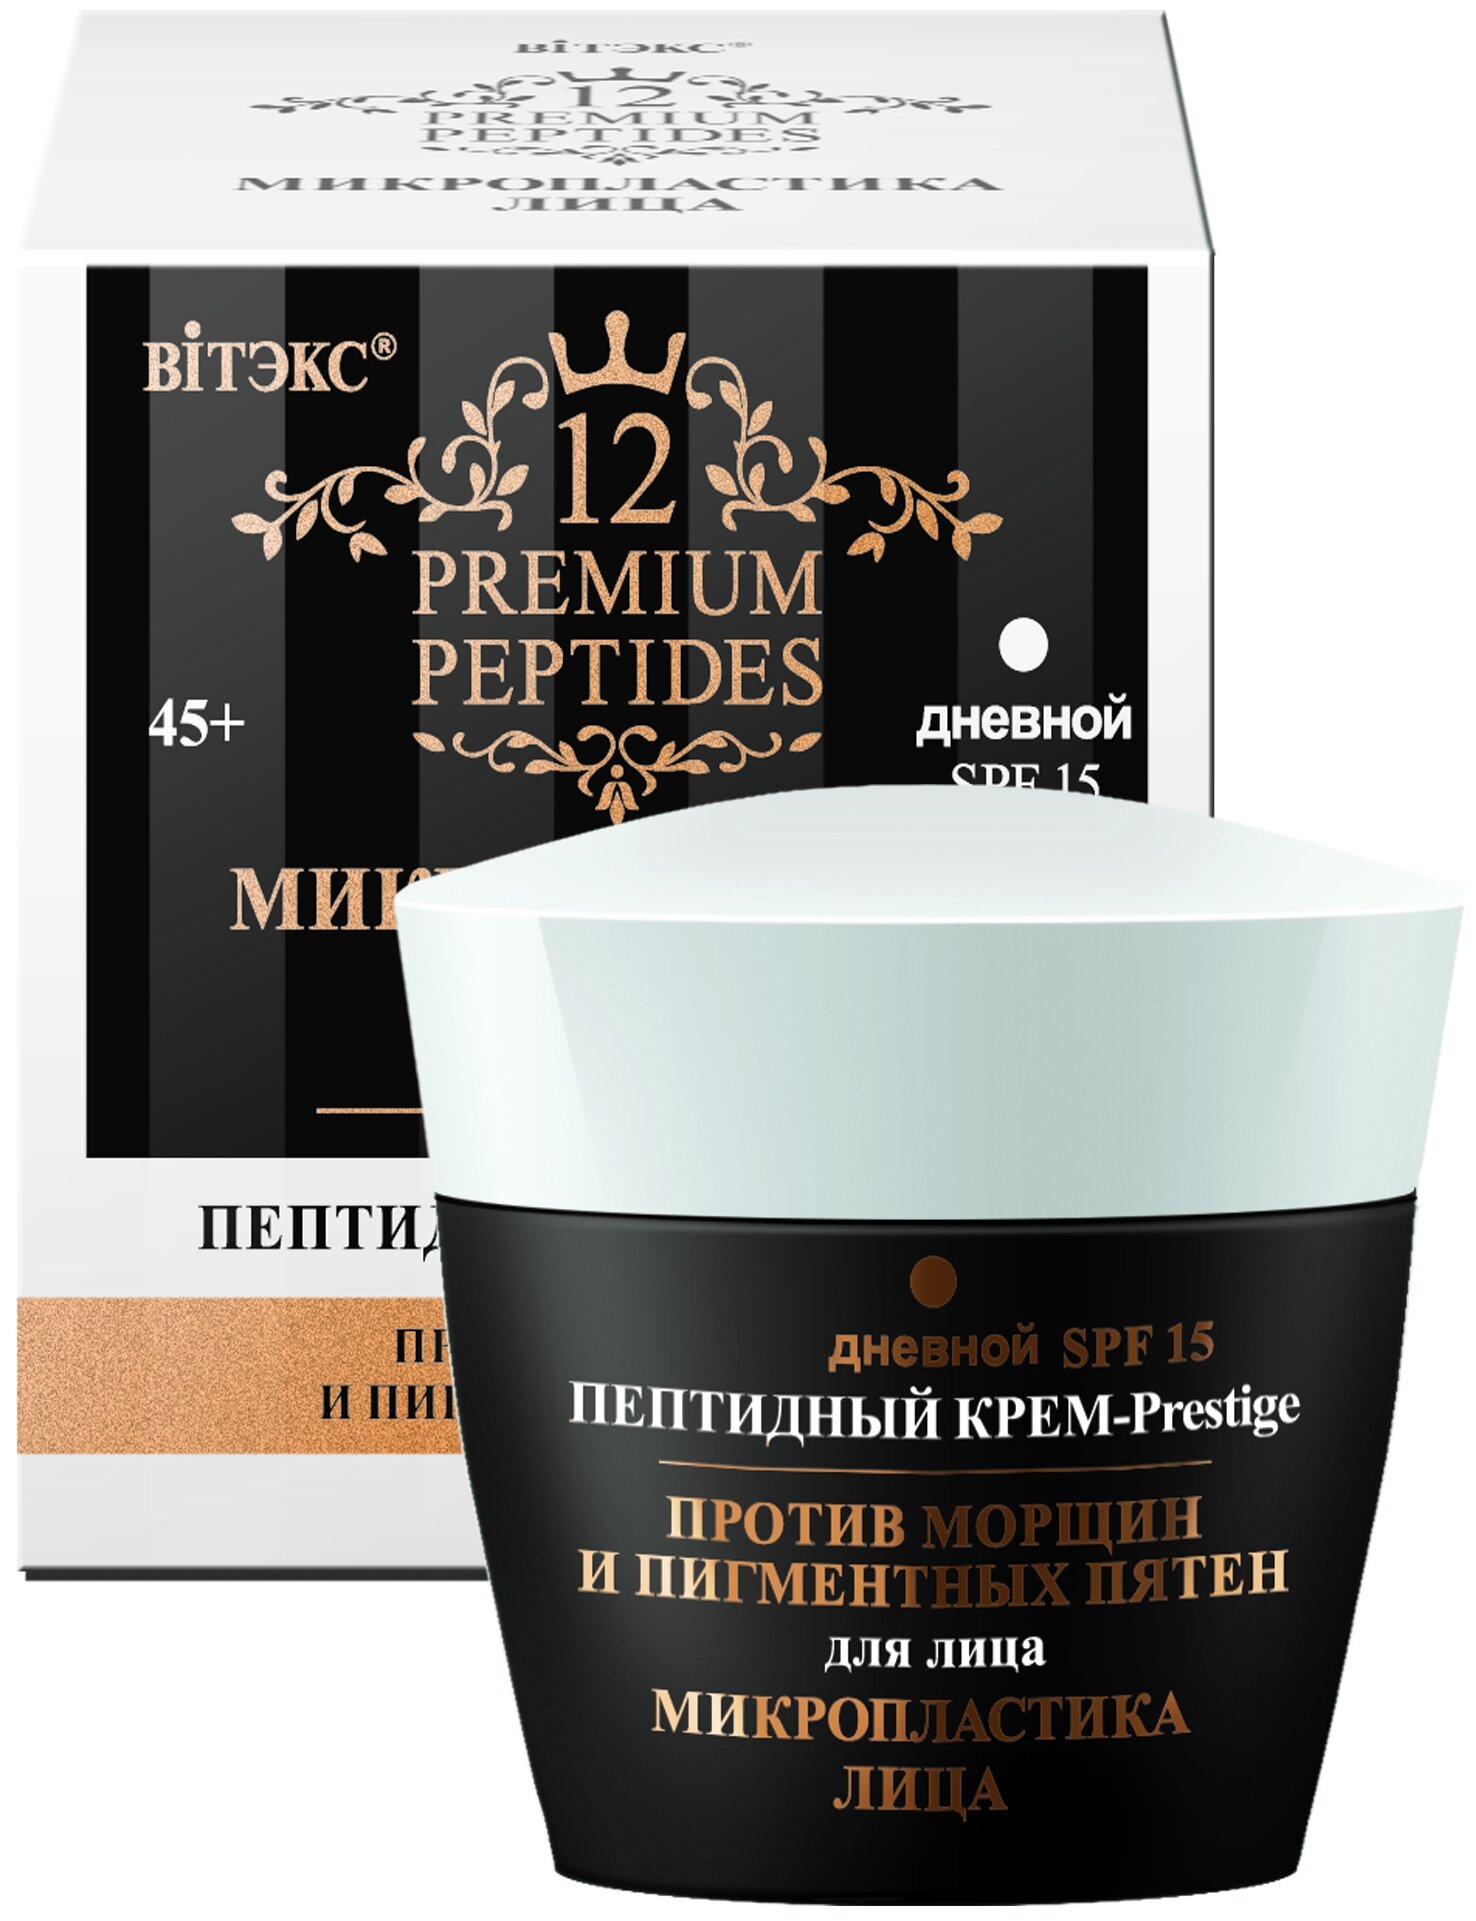 Витекс 12 Premium Peptides Микропластика лица Пептидный Крем-Prestige для лица против морщин и пигментных пятен дневной, SPF15. 45мл